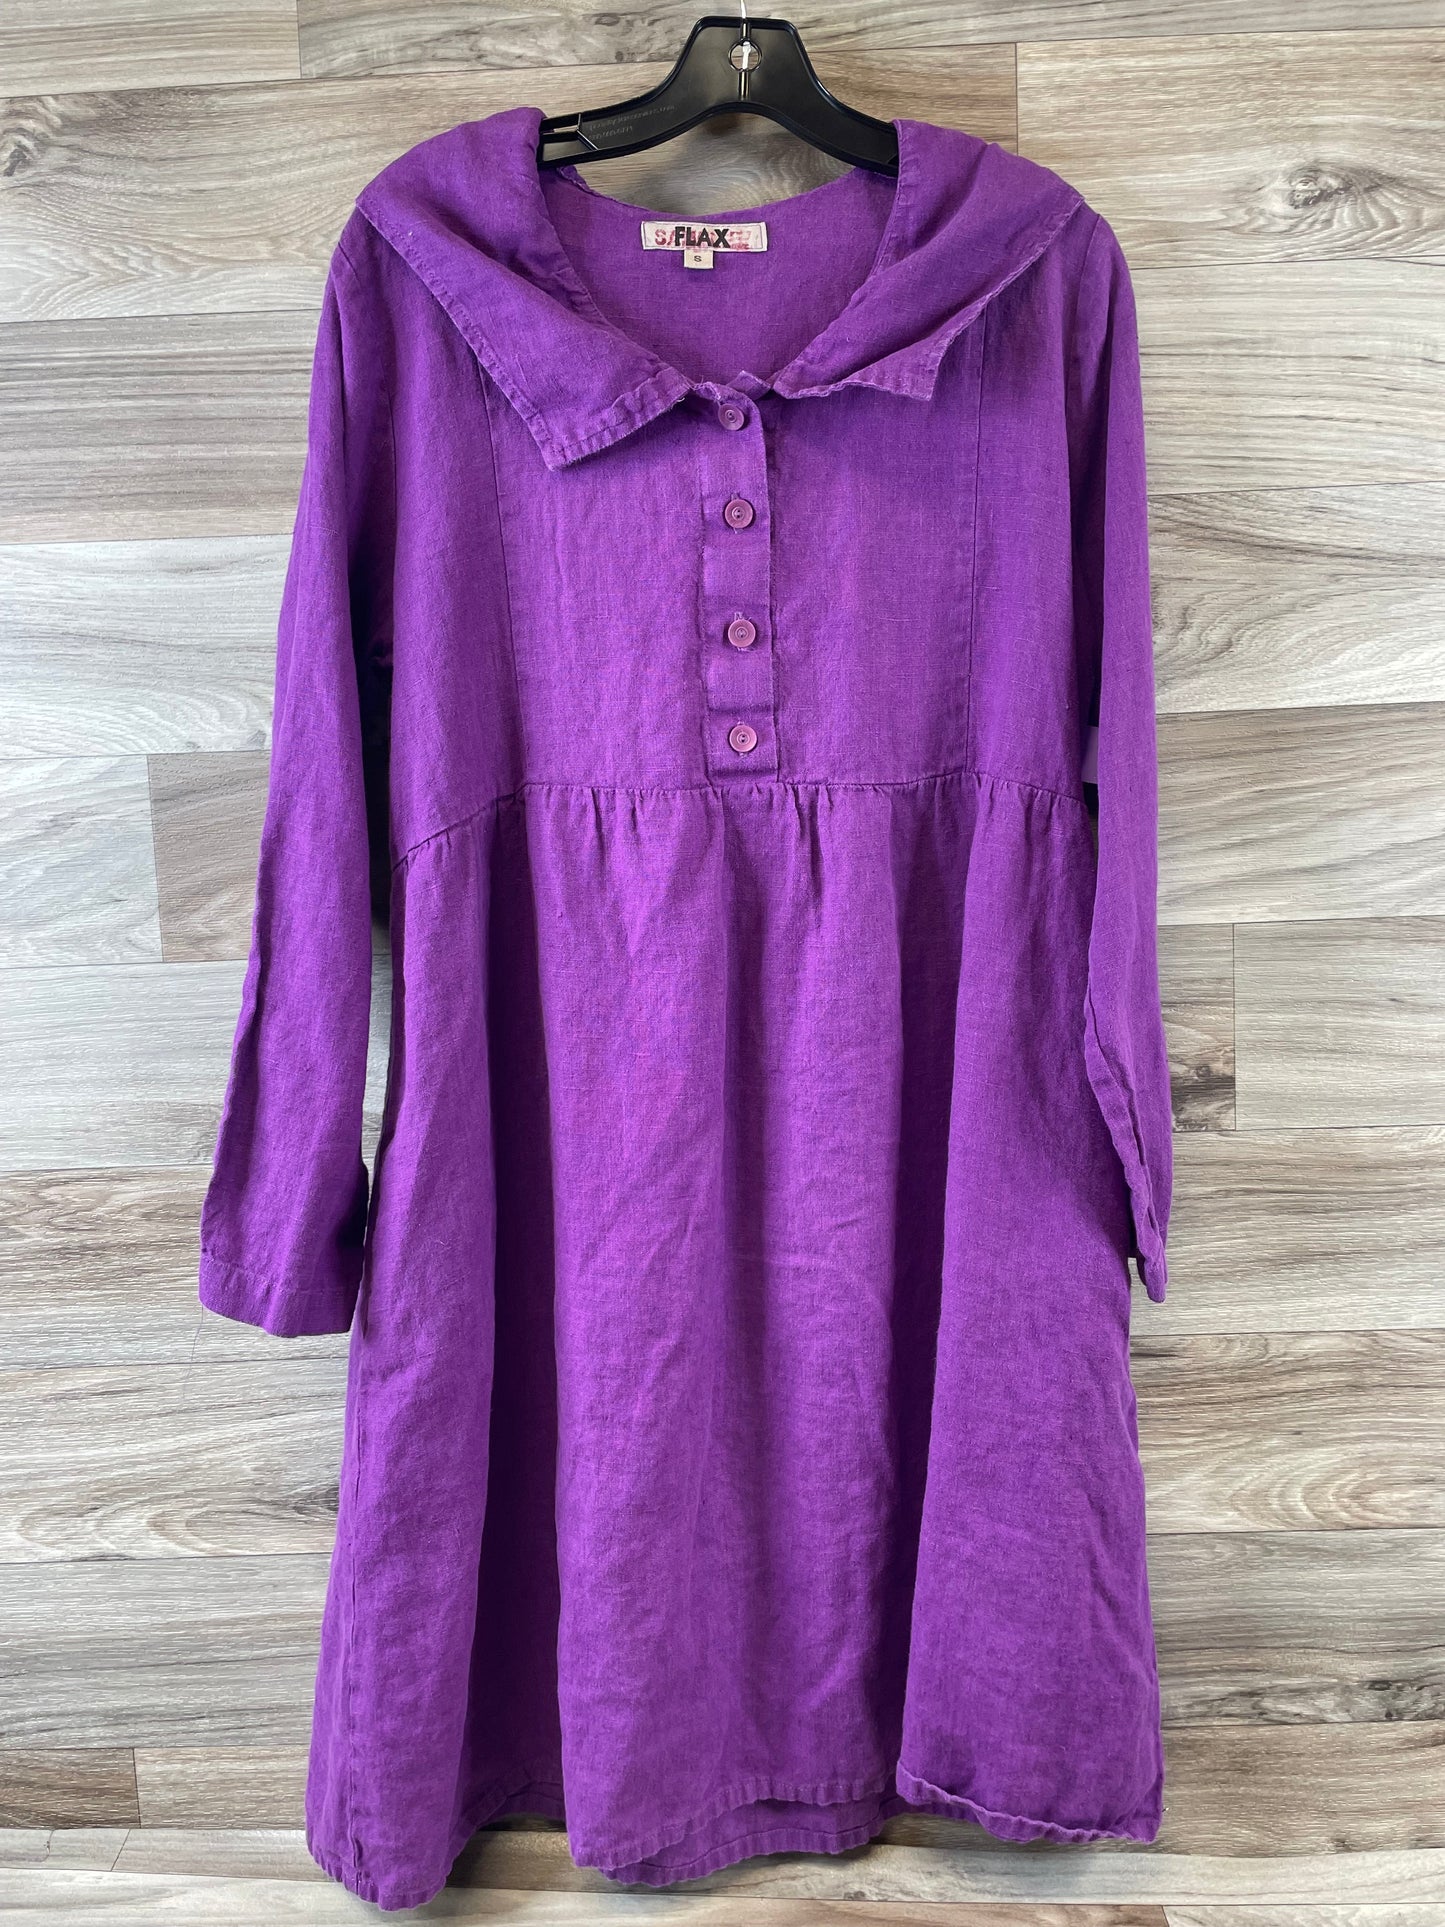 Purple Dress Casual Midi Flax, Size S